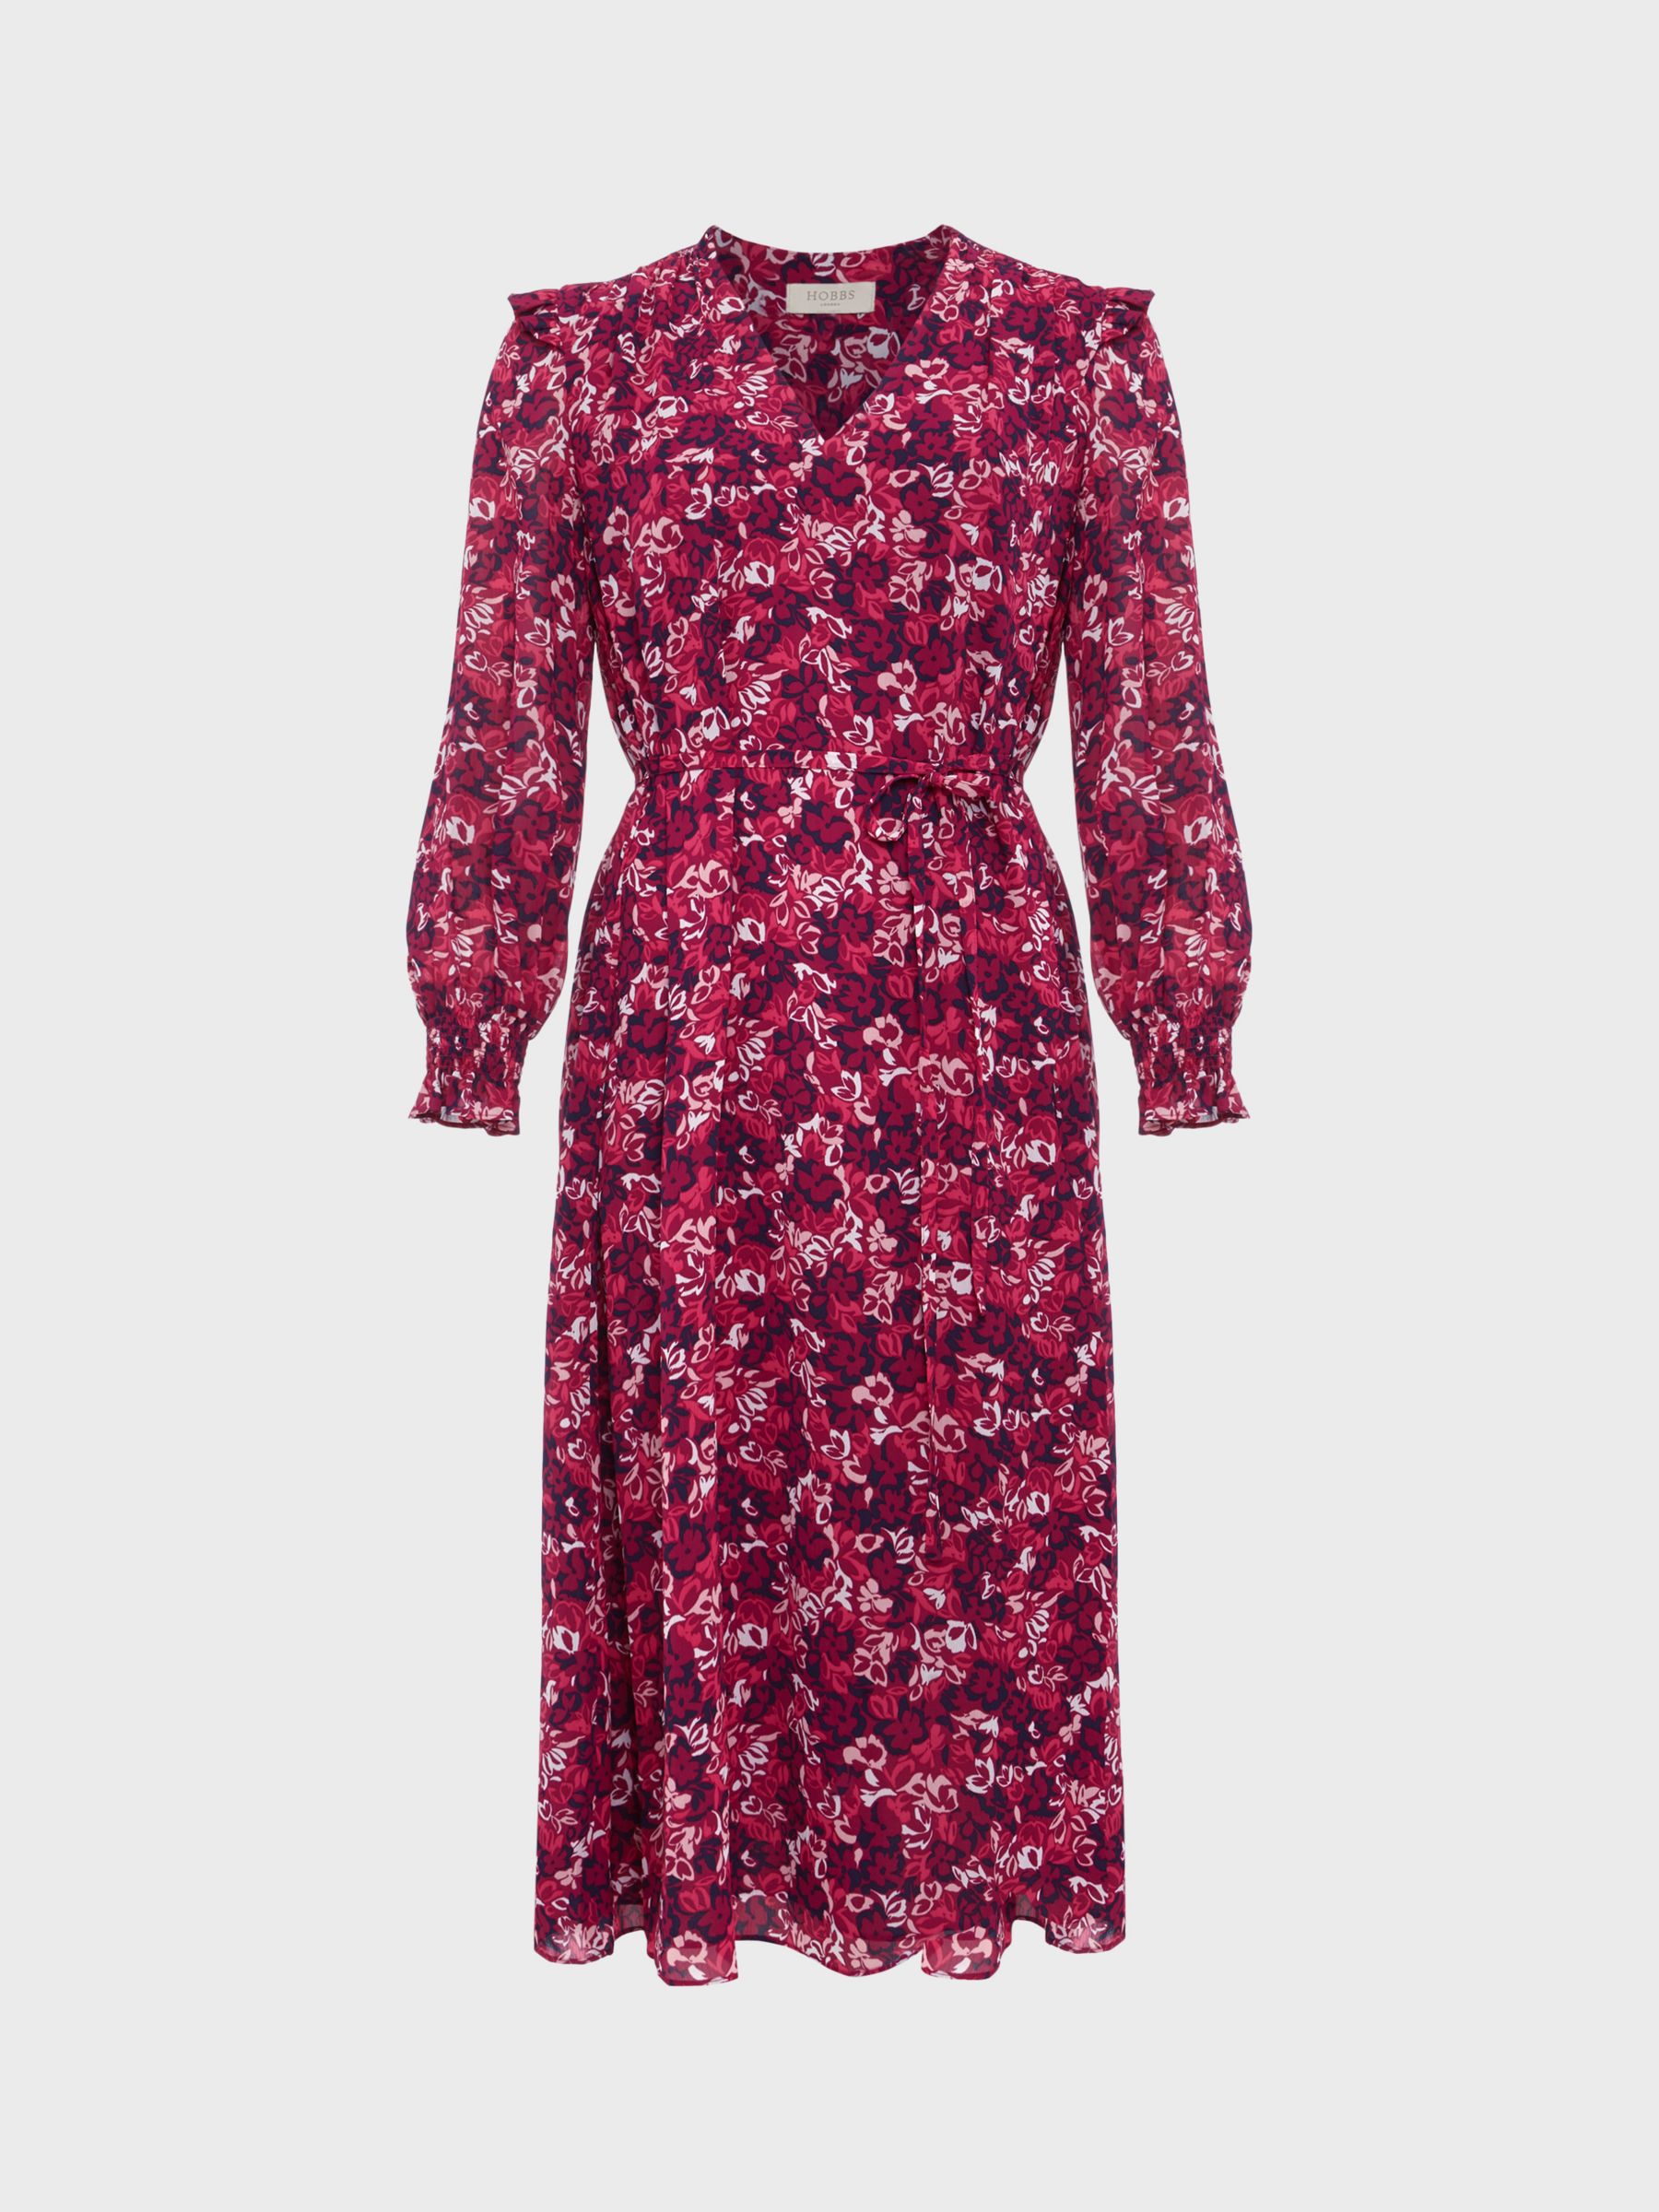 Hobbs Petite Elaina Leaf Print Dress, Purple/Multi, 10